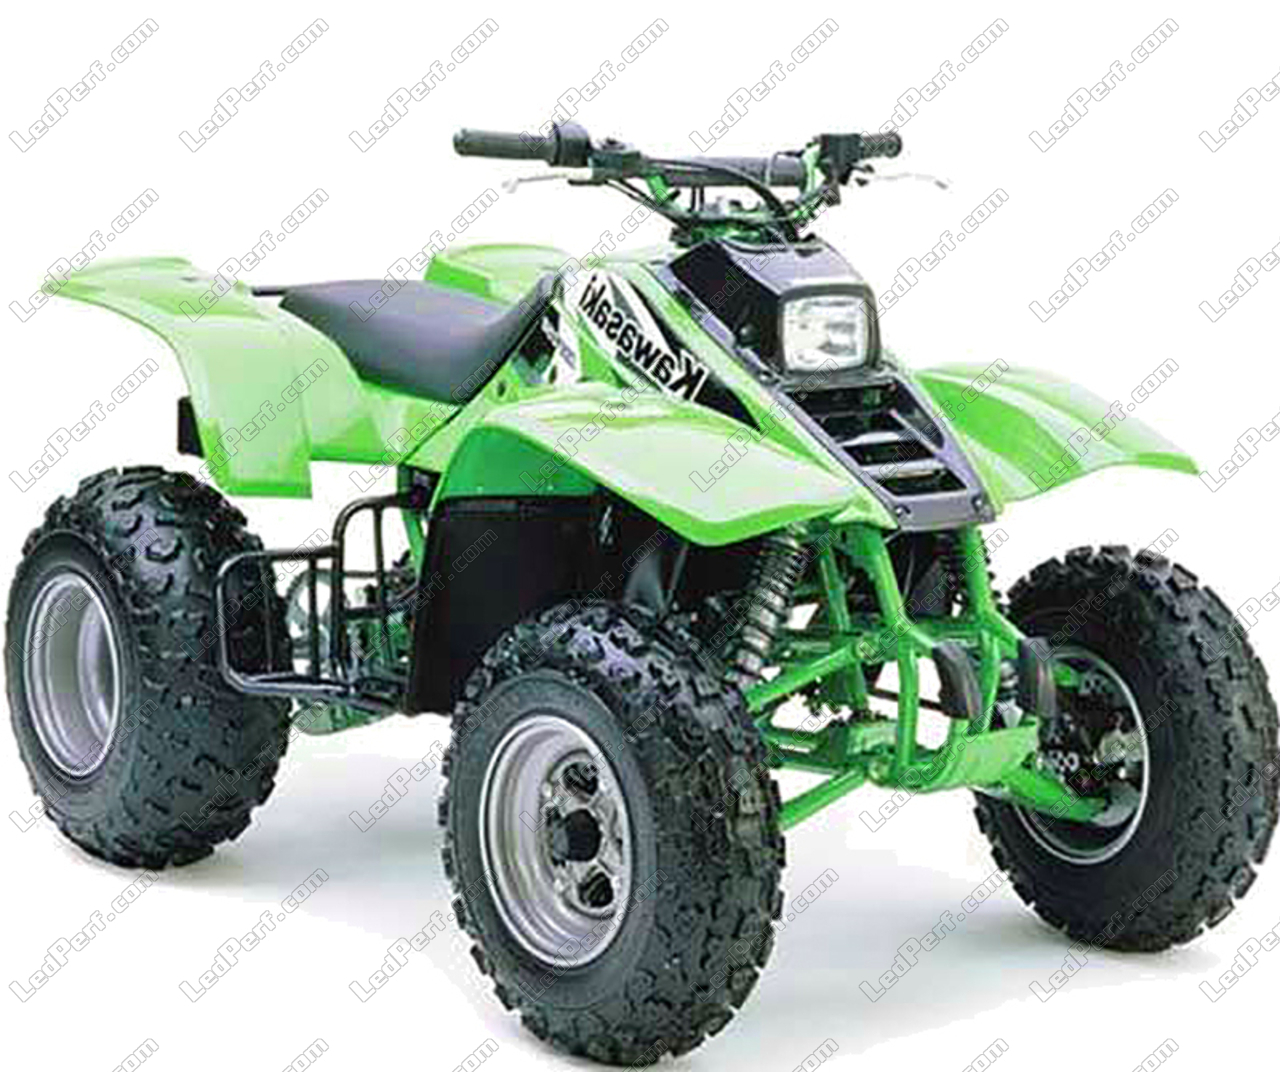 symptom katolsk Kan ikke læse eller skrive Additional LED headlights for ATV Kawasaki KFX 250